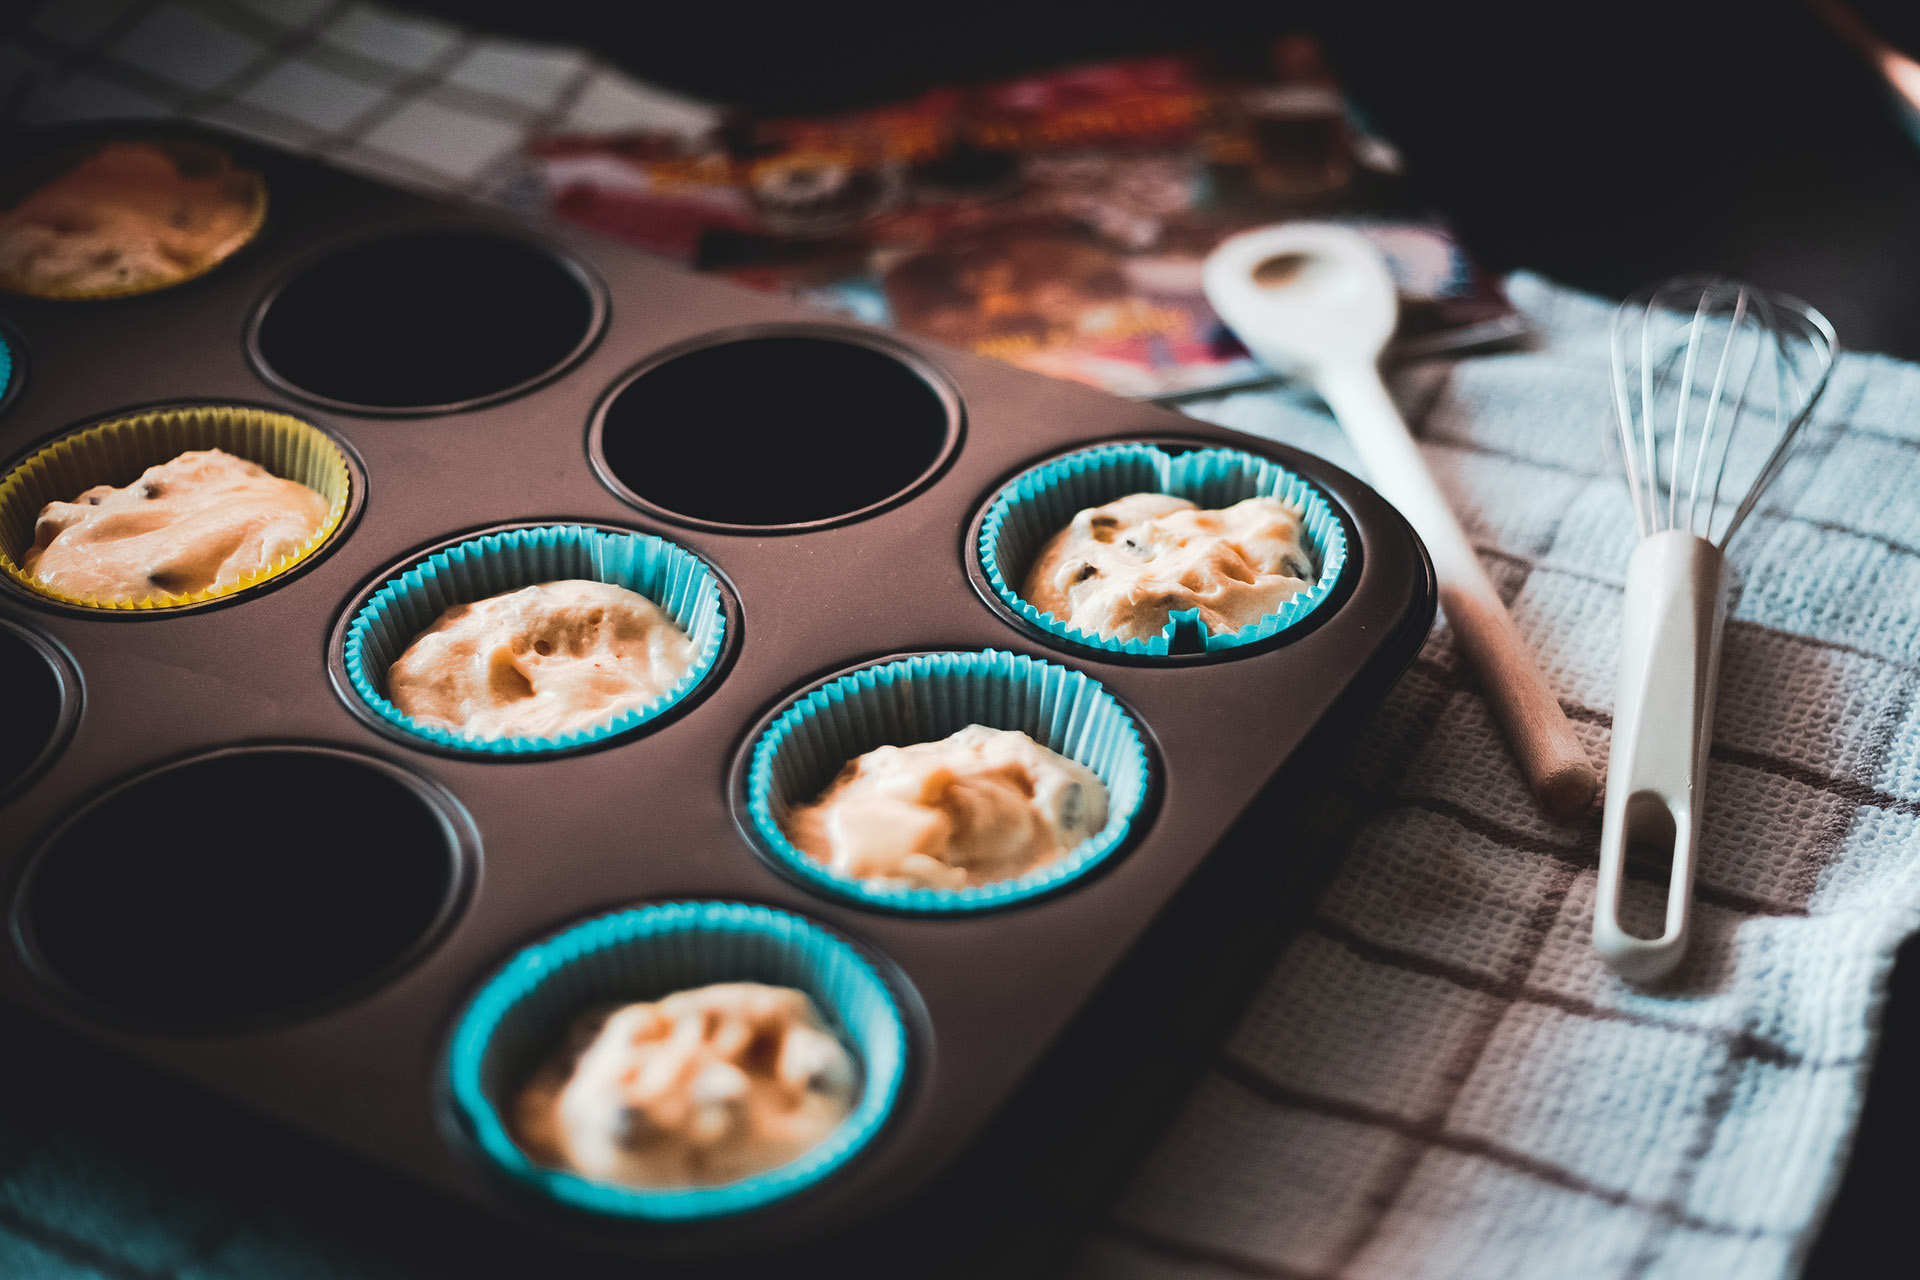 En svart muffinsform som ligger på en vit och blå rutig duk. I formen ligger det muffinsformar och deg som är redo att åka in i ugnen och bakas. På duken ligger även en träslev och en tidning.